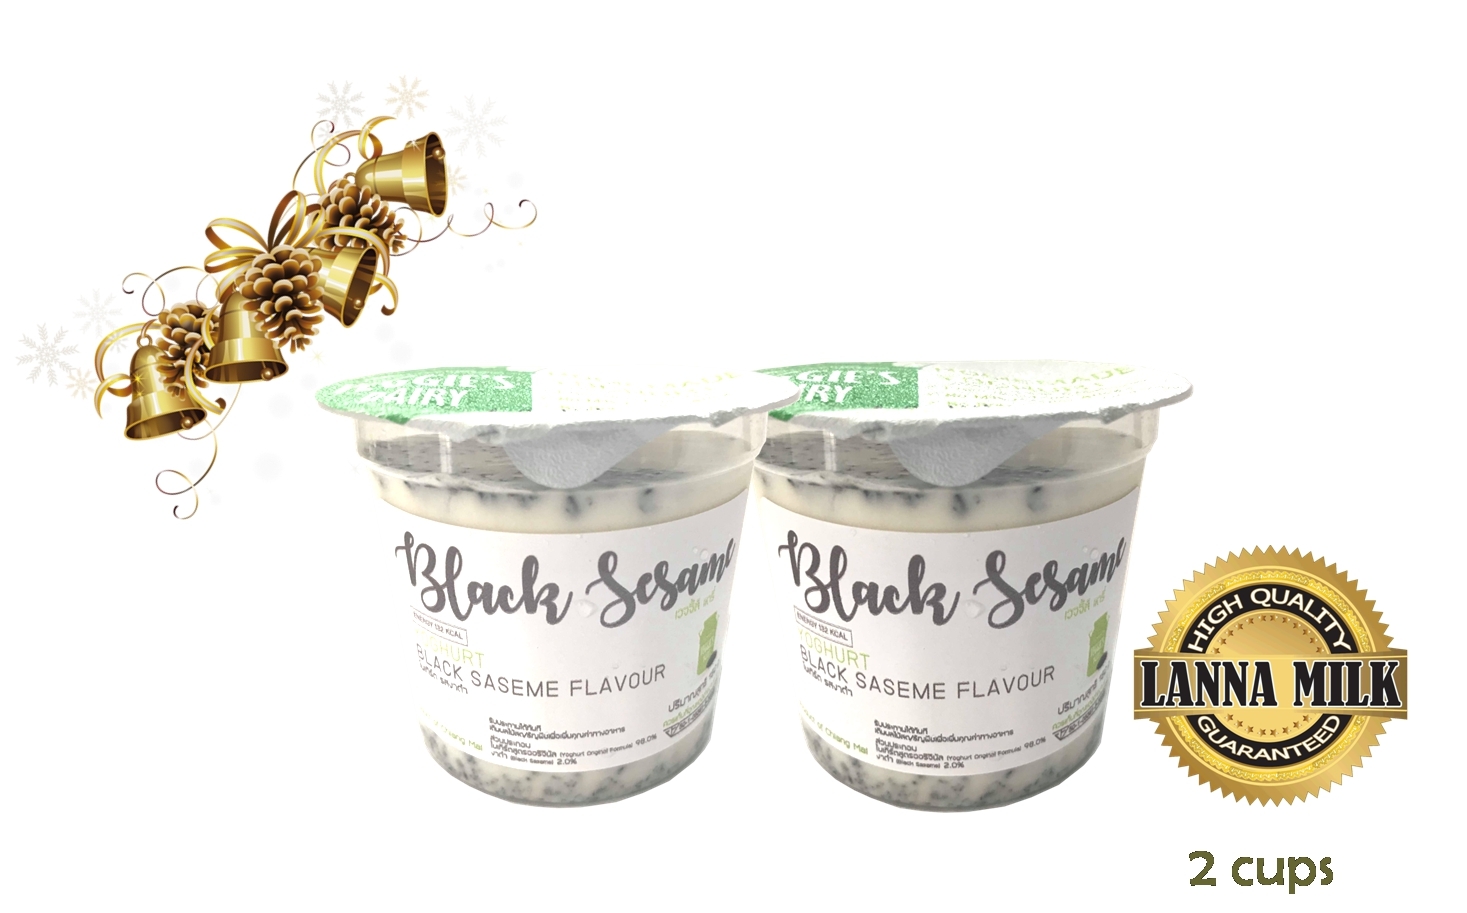 โยเกิร์ตโฮมเมด เวจจี้ส์แดรี่ 150กรัม แพค2ถ้วย รส งาดำ Homemade Yoghurt Veggie’s Dairy  Black sesame Flavor (150 g) 2 cups